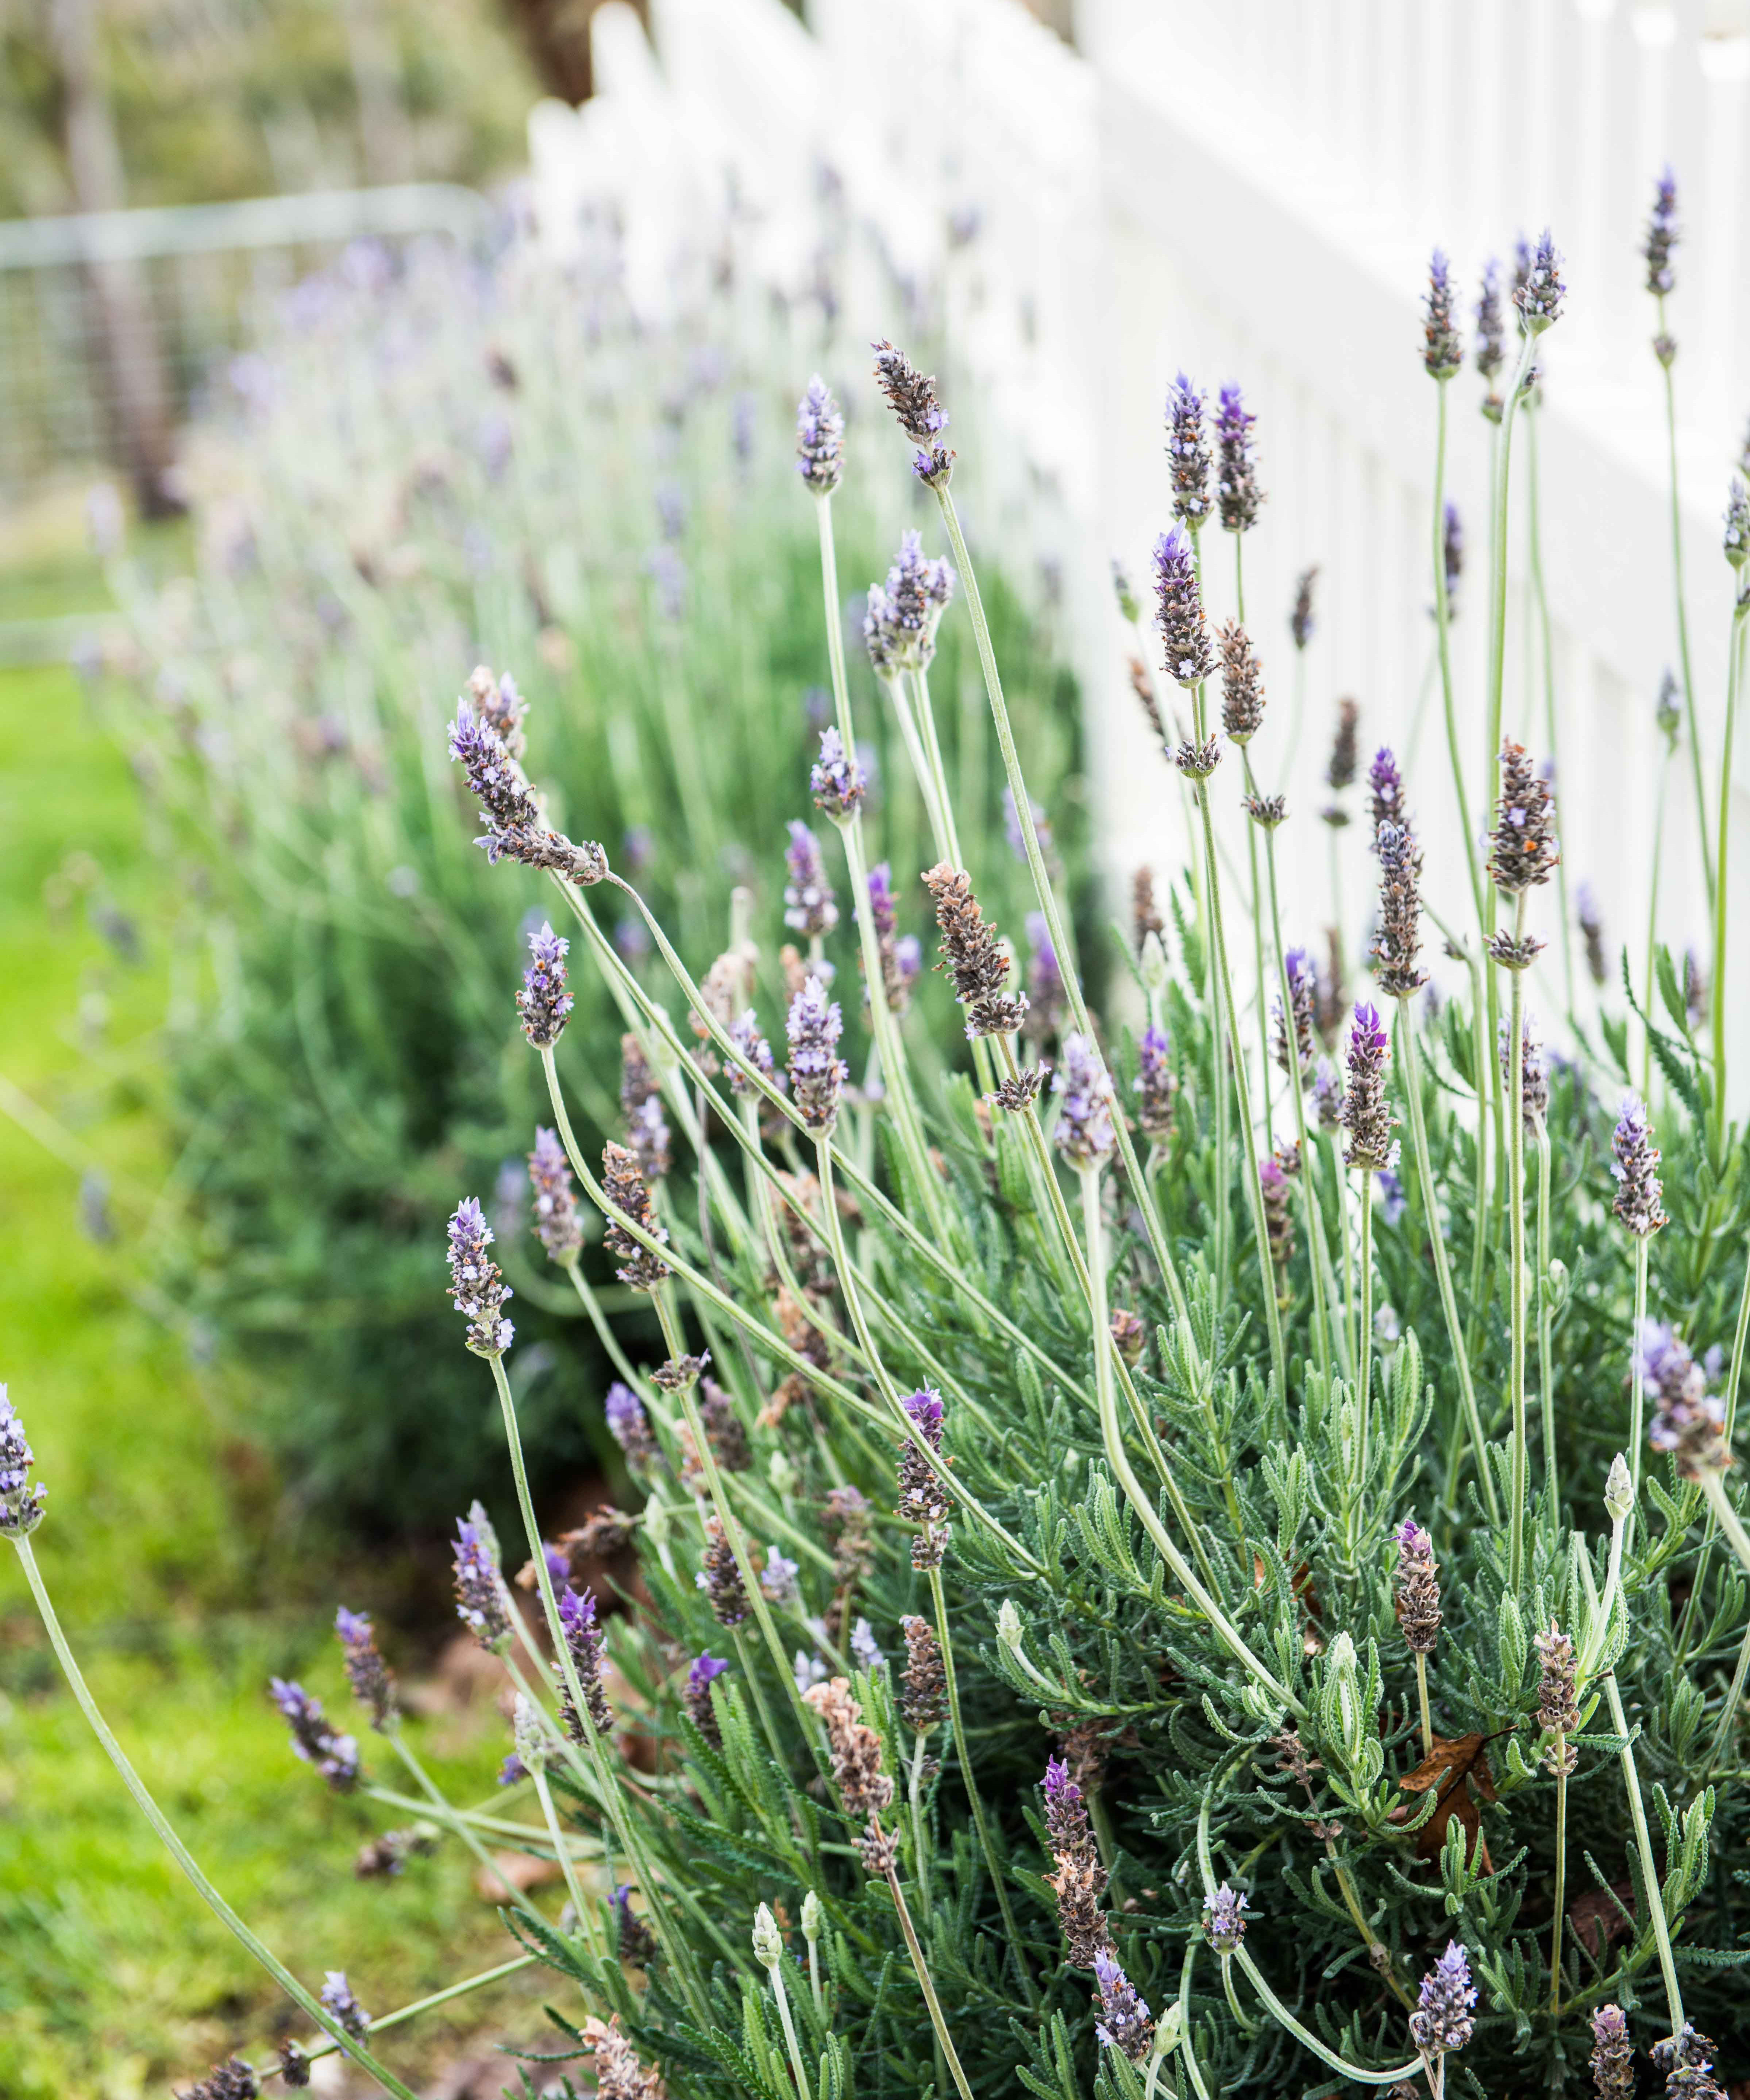 Freshly grown lavender